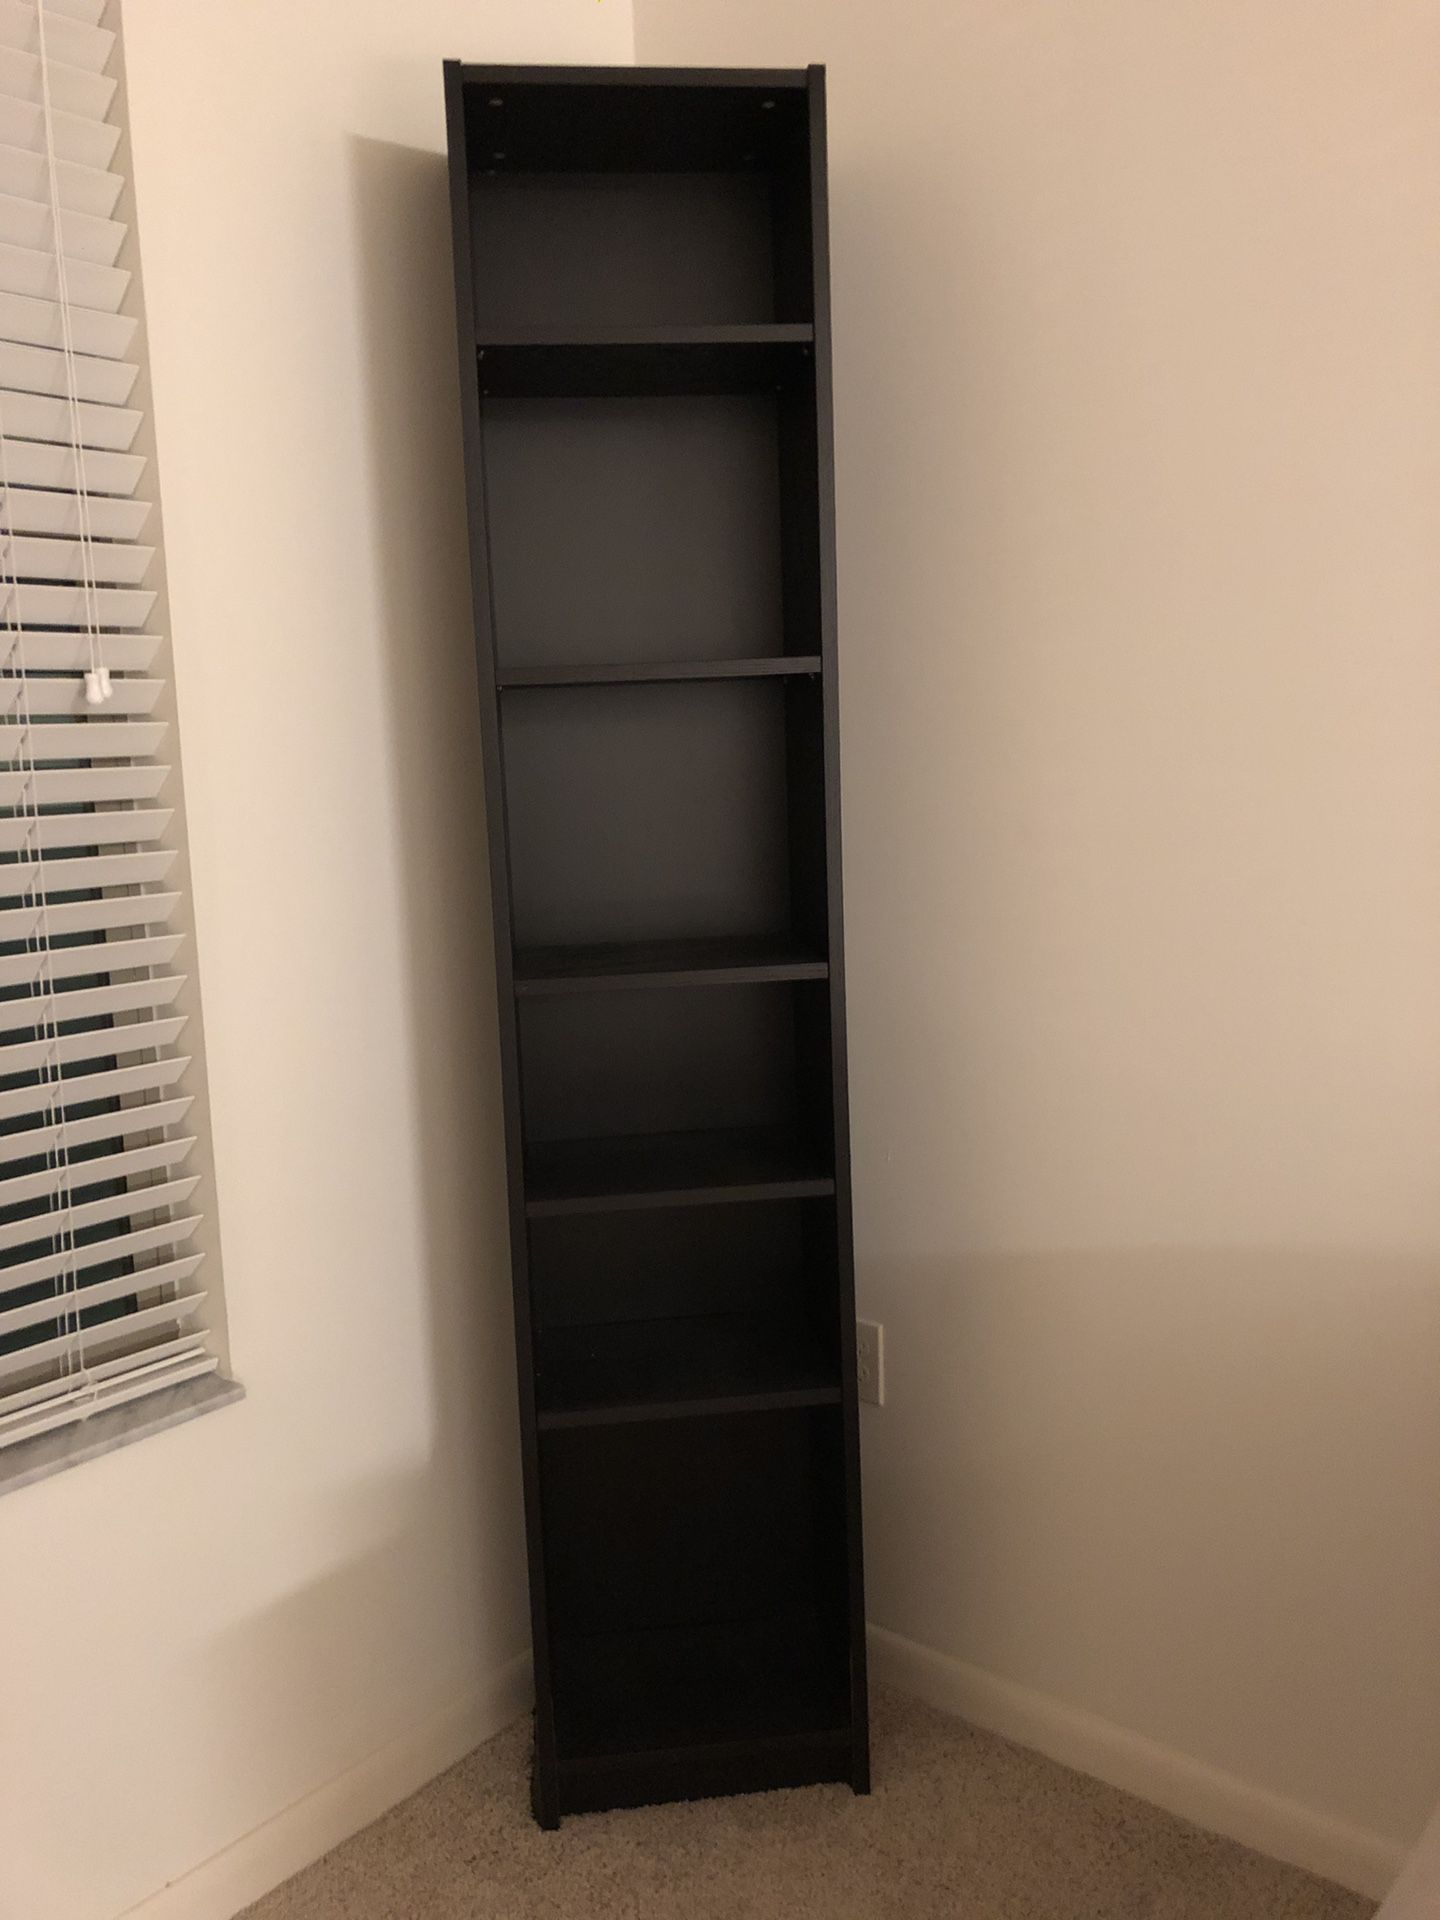 Black corner shelf